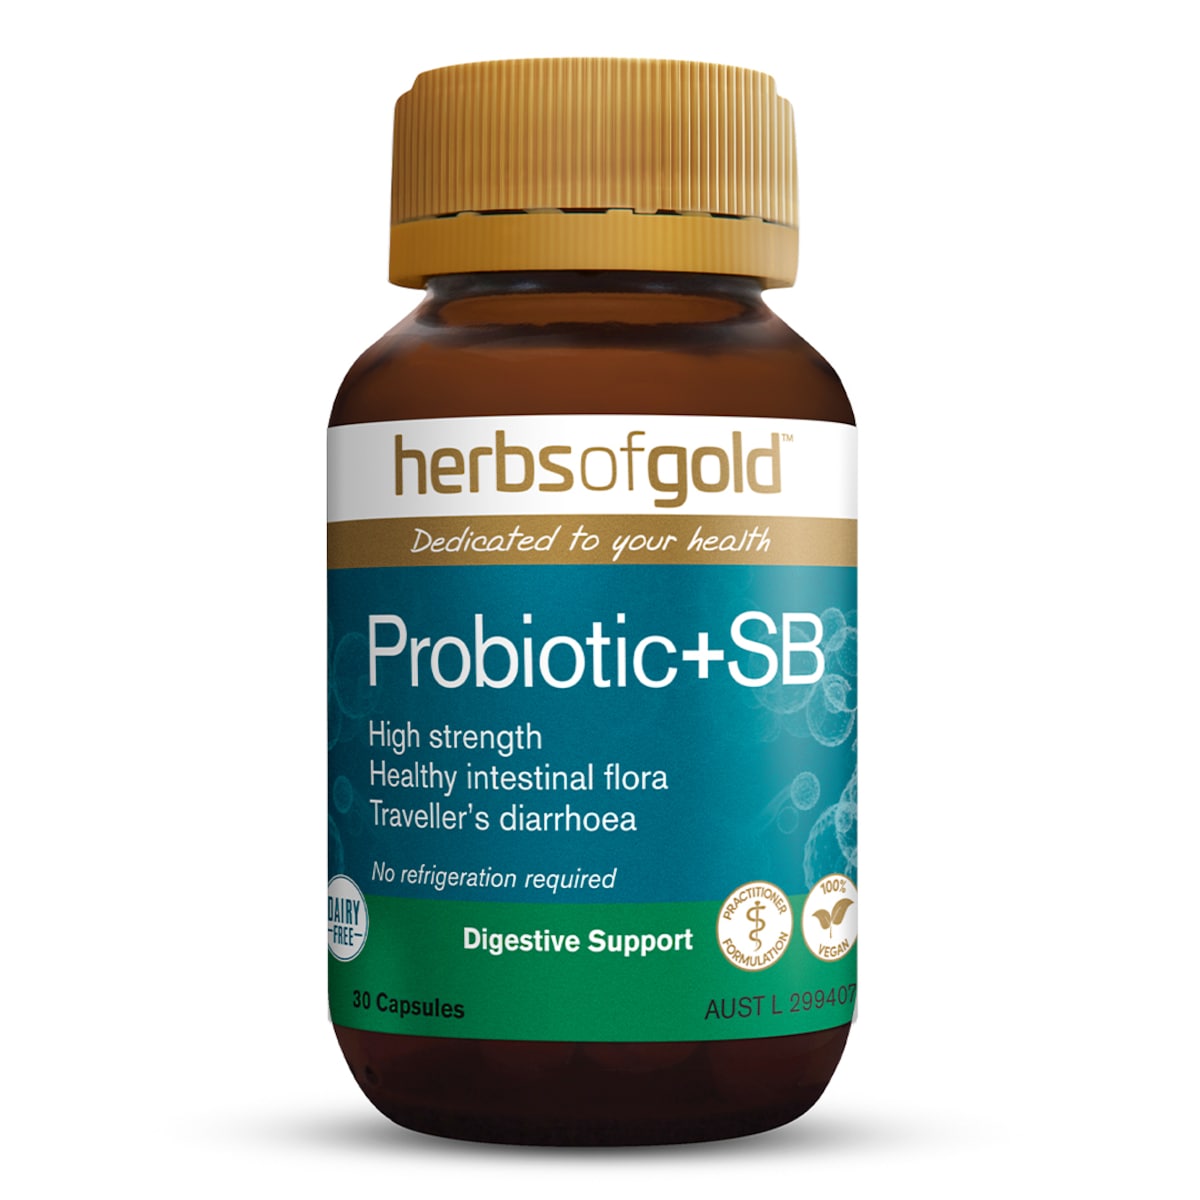 Herbs of Gold Probiotic + SB 30 Capsules Australia